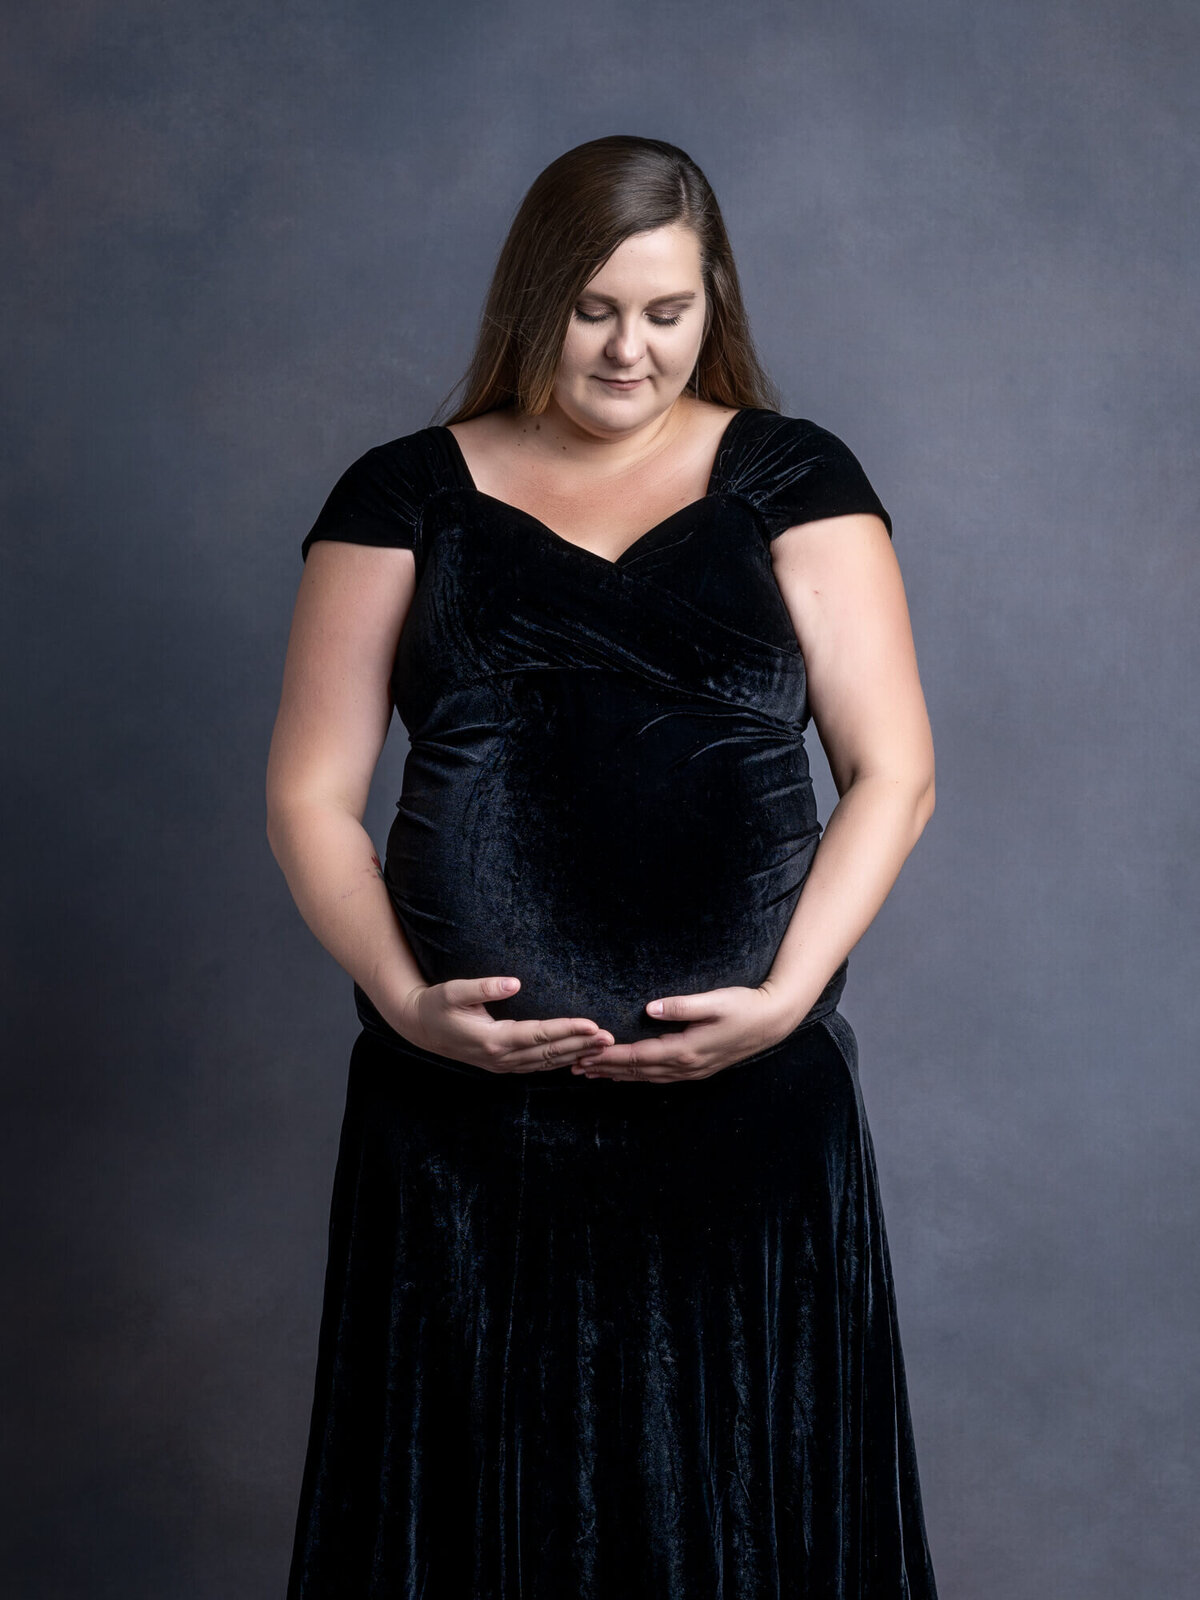 prescott-az-maternity-photographer-115